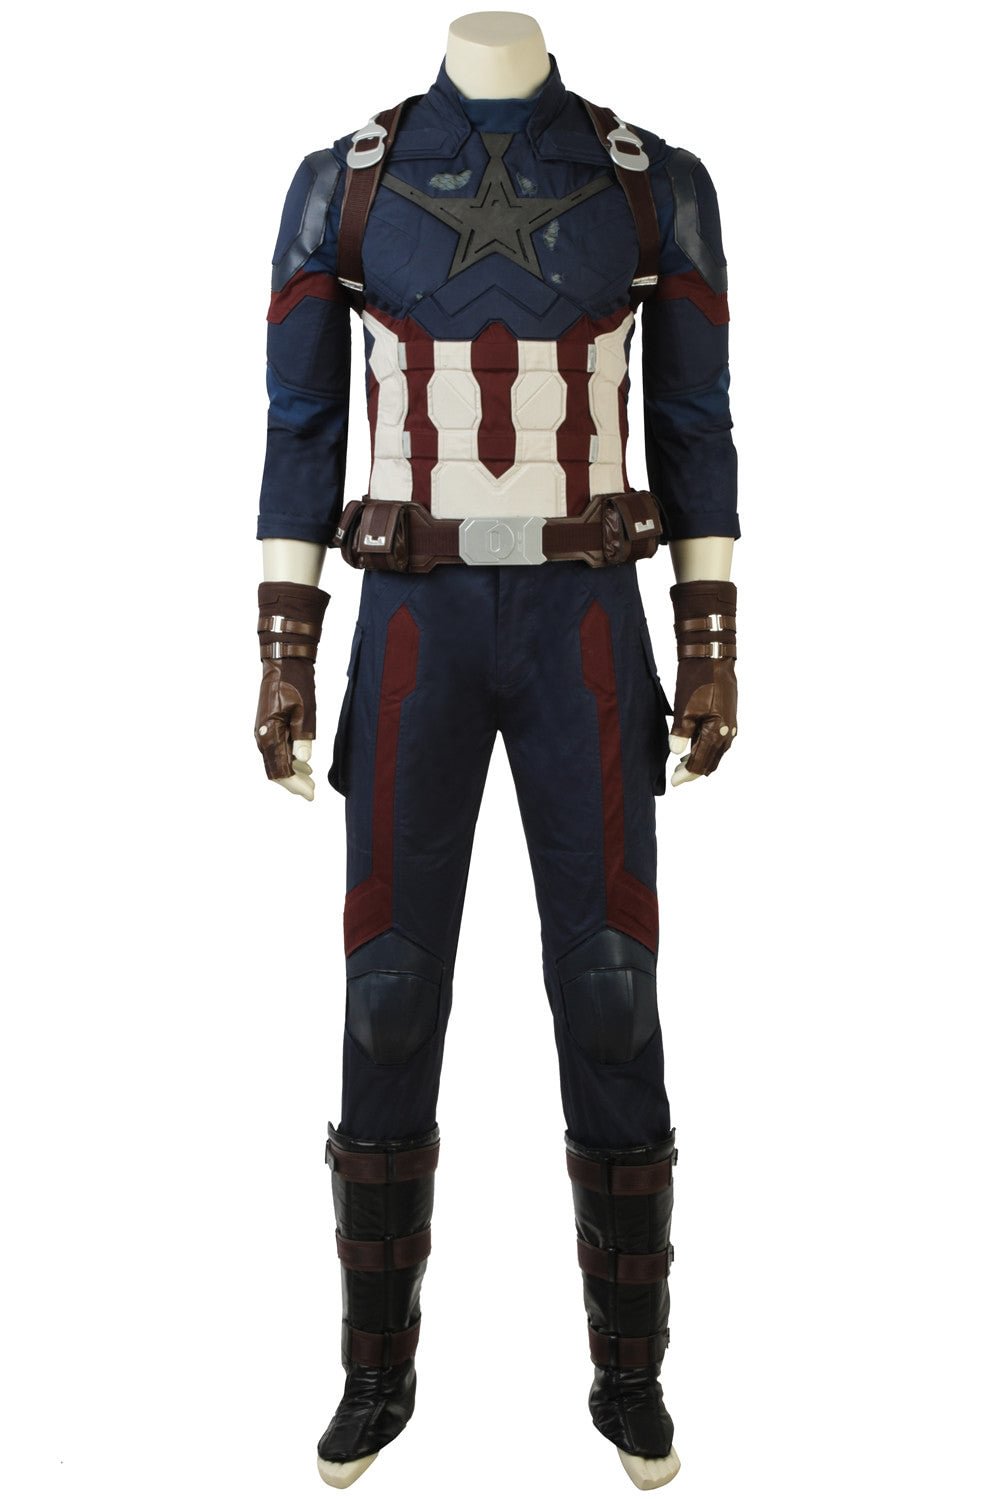 Marvel Avengers 3: Infinity War Captain America Steven Rogers Cosplay Costume